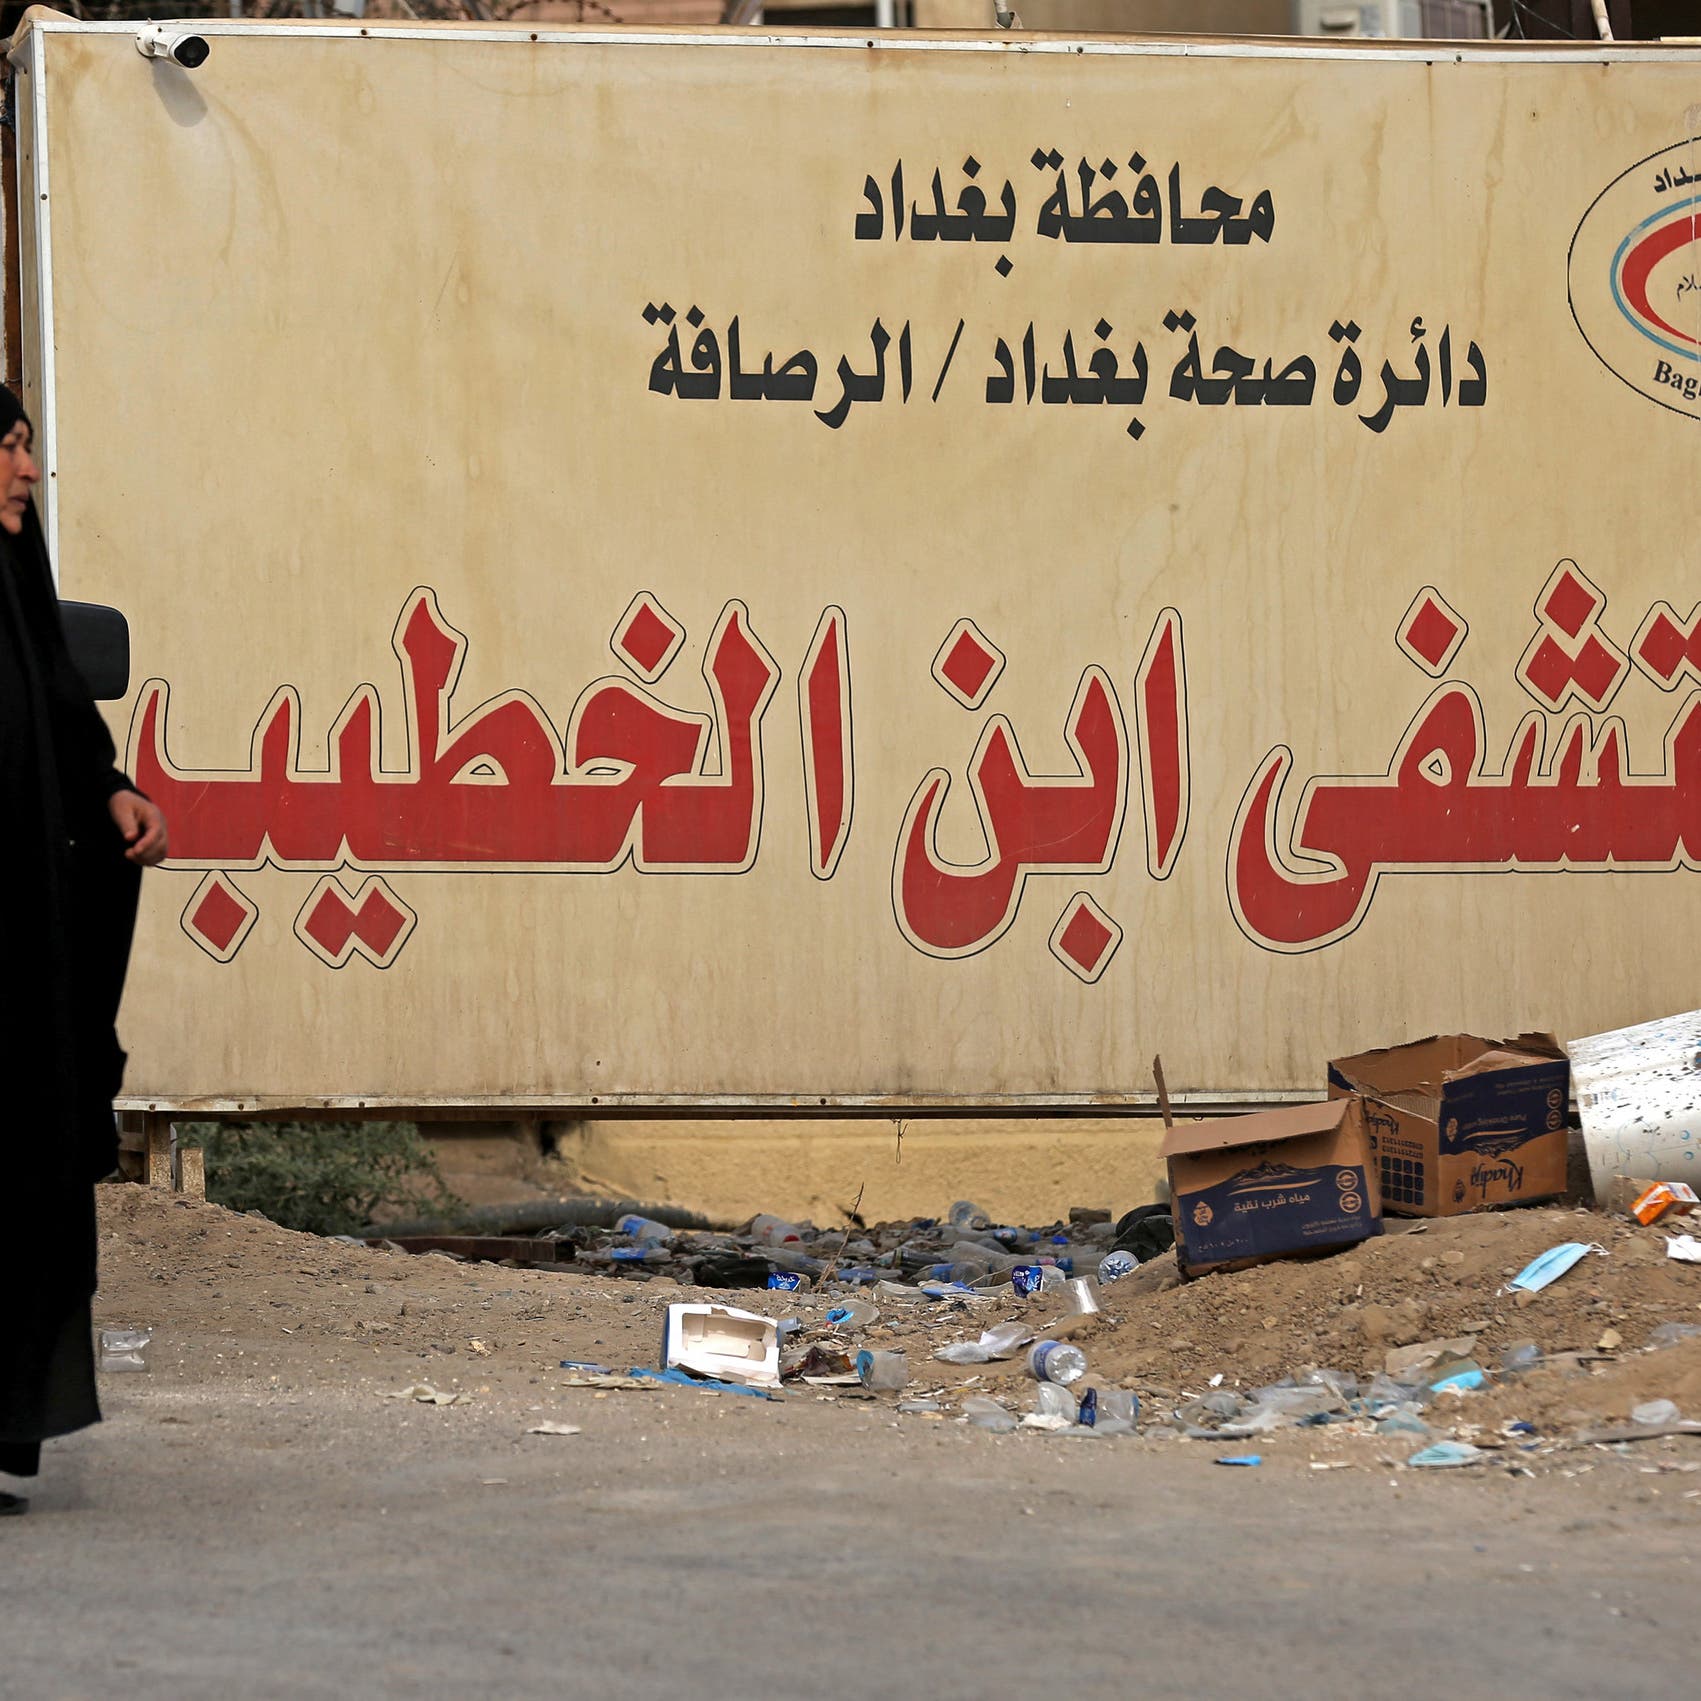 كارثة بغداد.. وقف وزير الصحة والمحافظ وإحالتهما للتحقيق